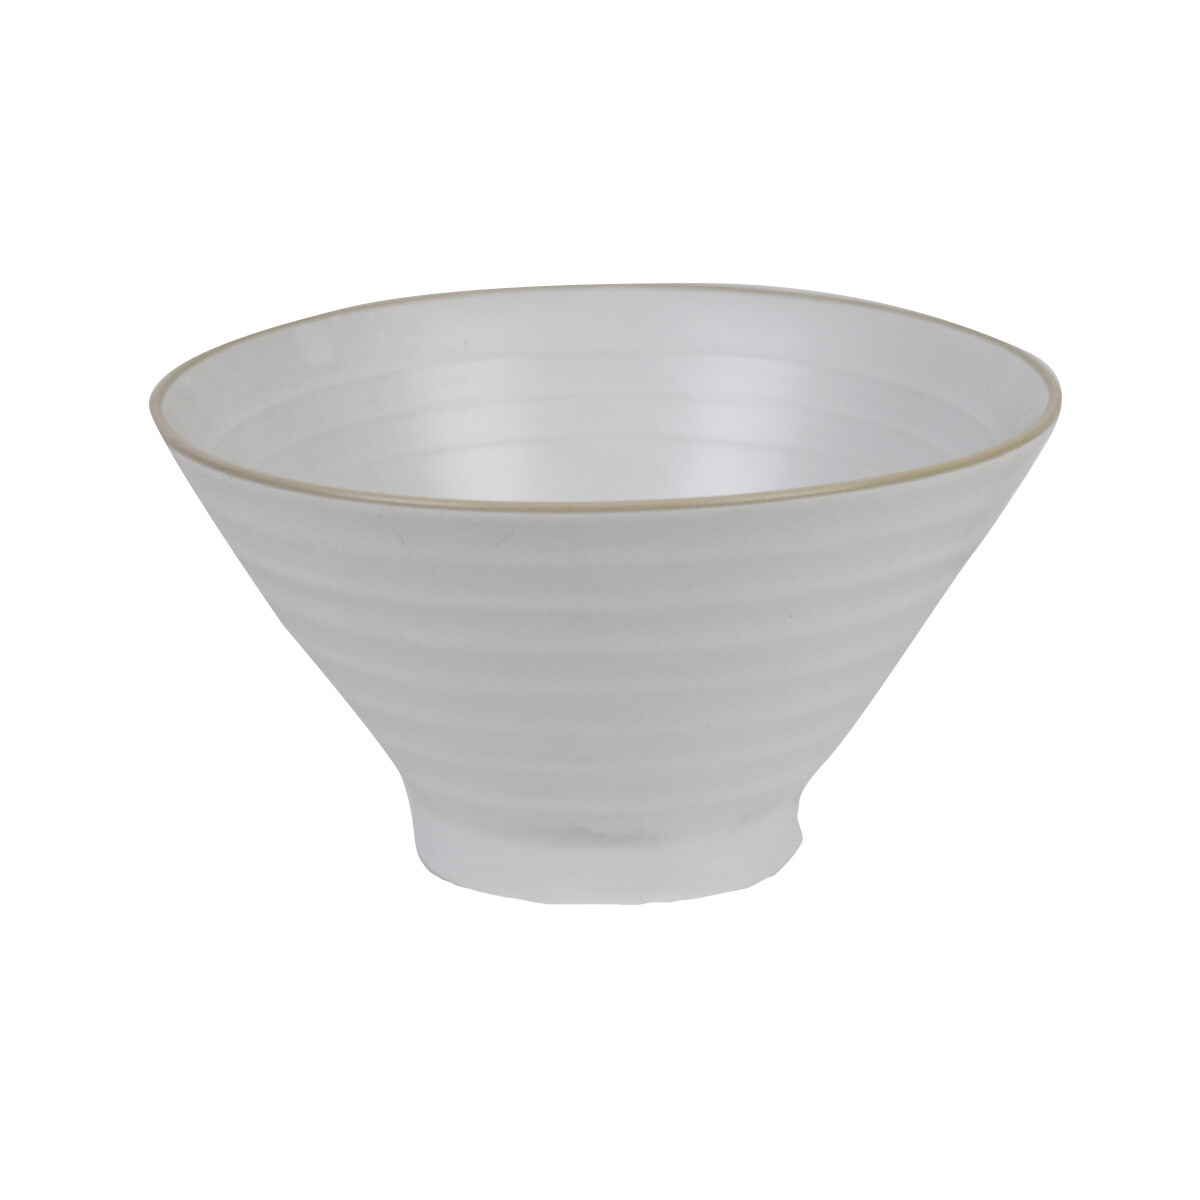 Bowl de ceramica conico 